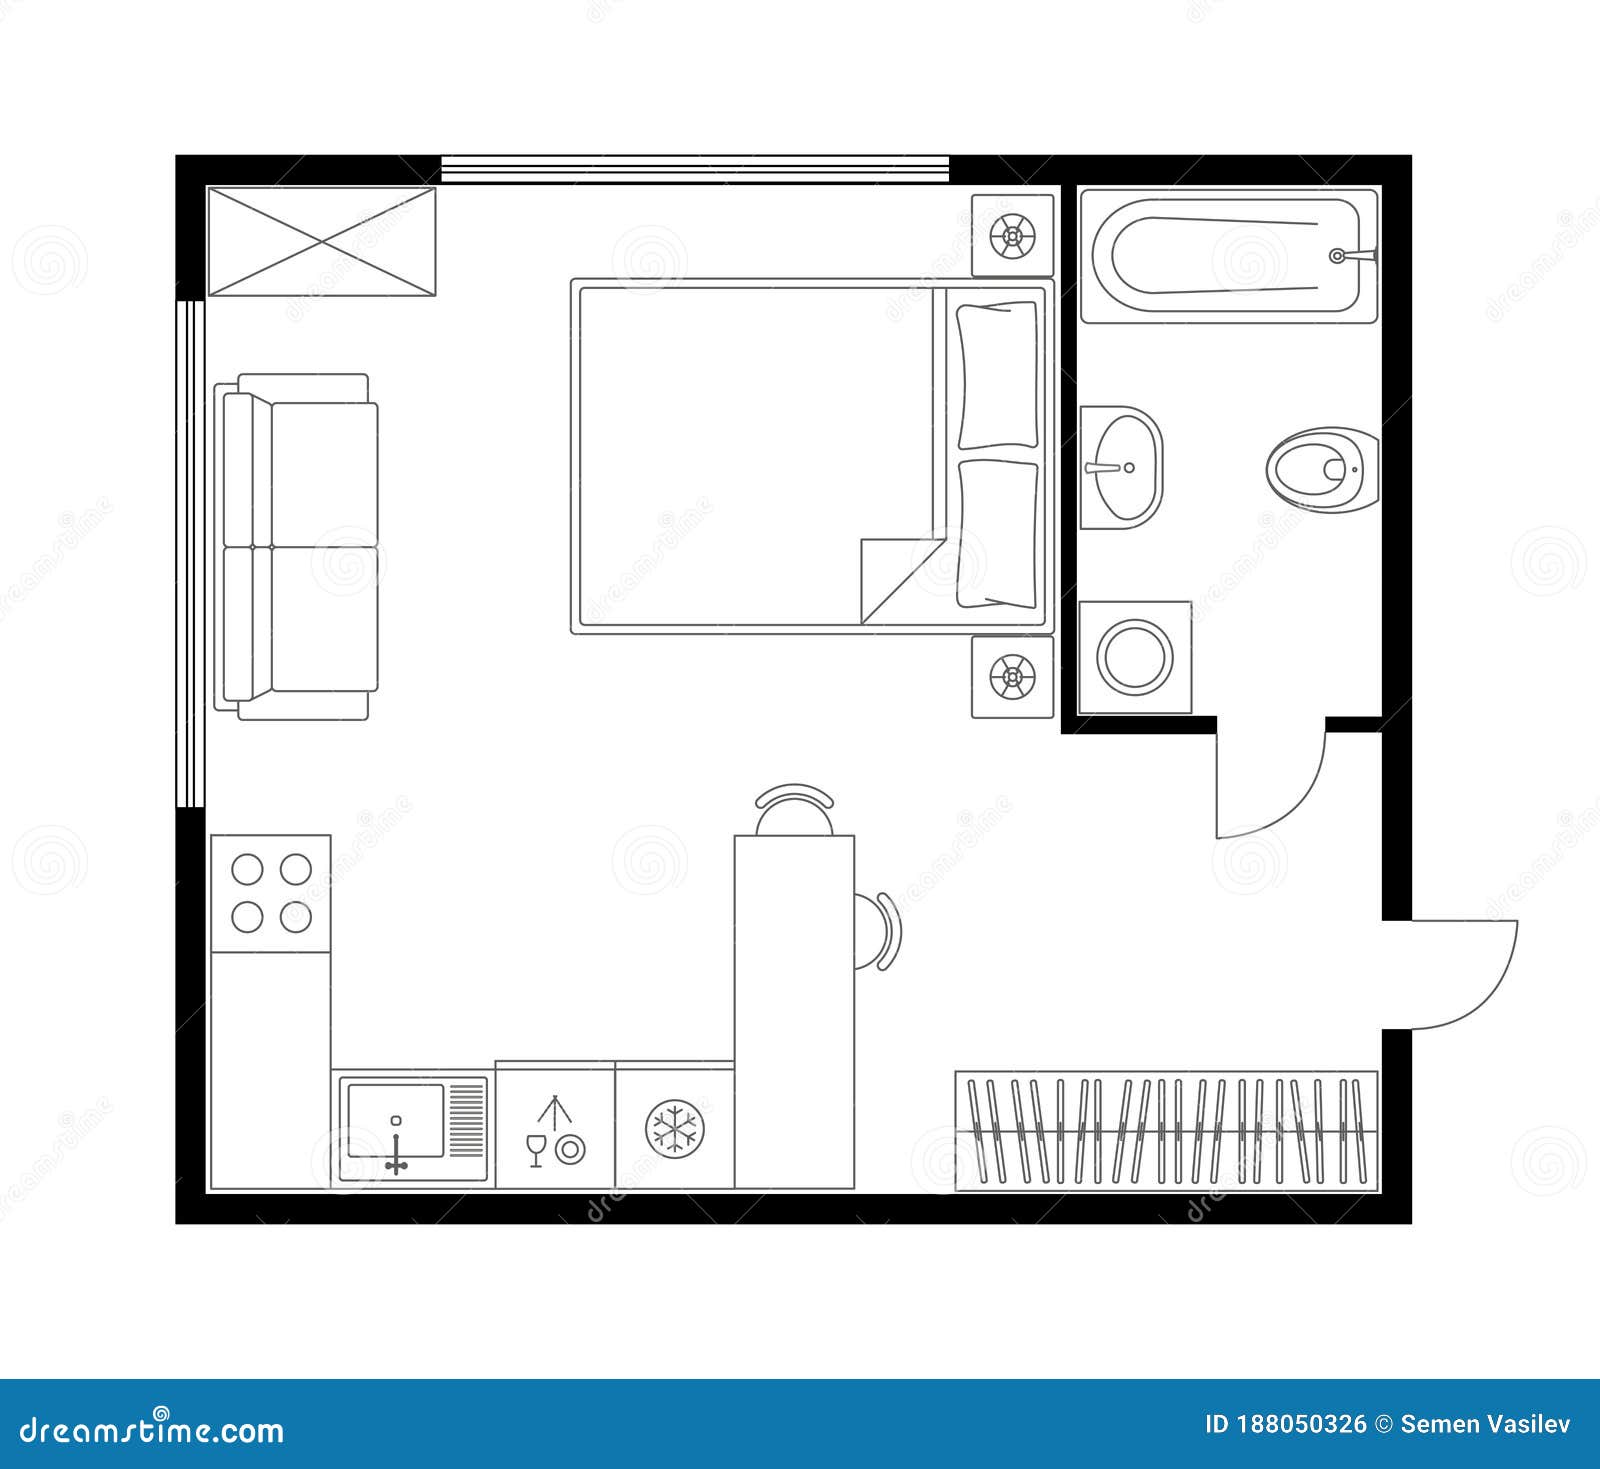 Architecture Plan of Apartment, Studio, Condominium, Flat, House ...